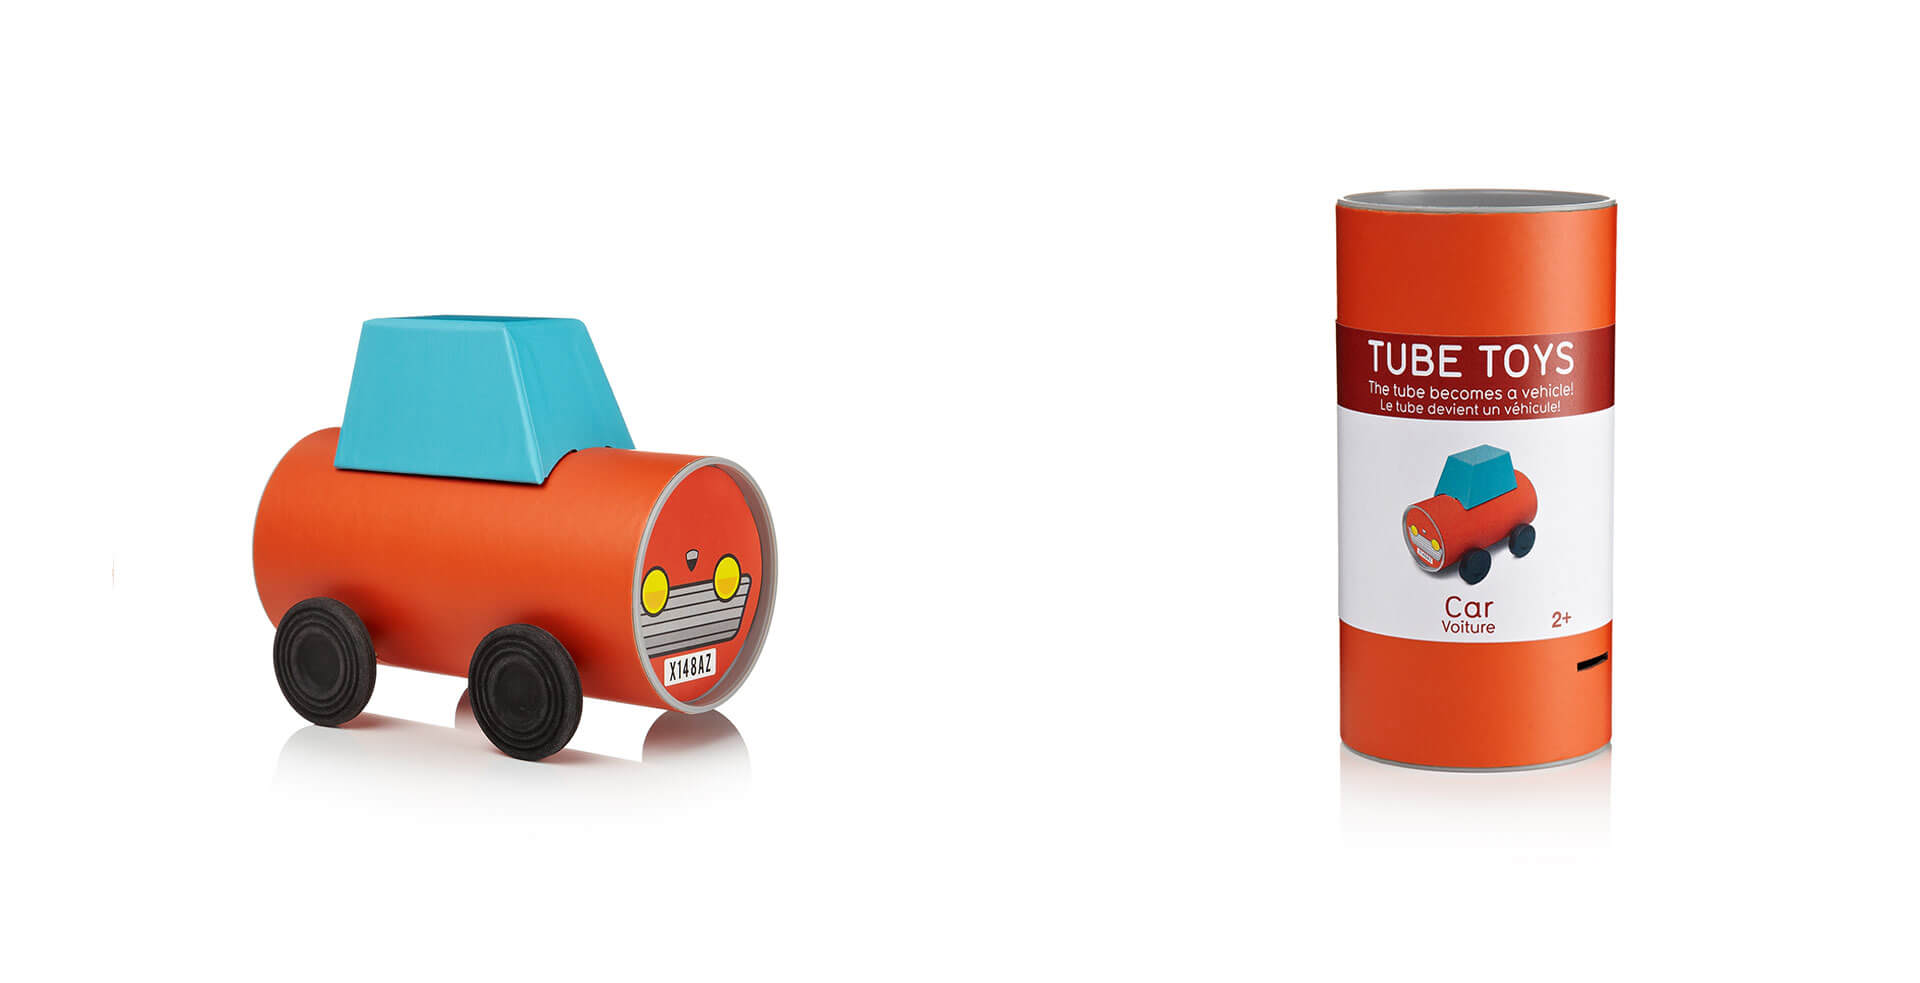 Tube-Toys_Car_Oscar-Diaz_car